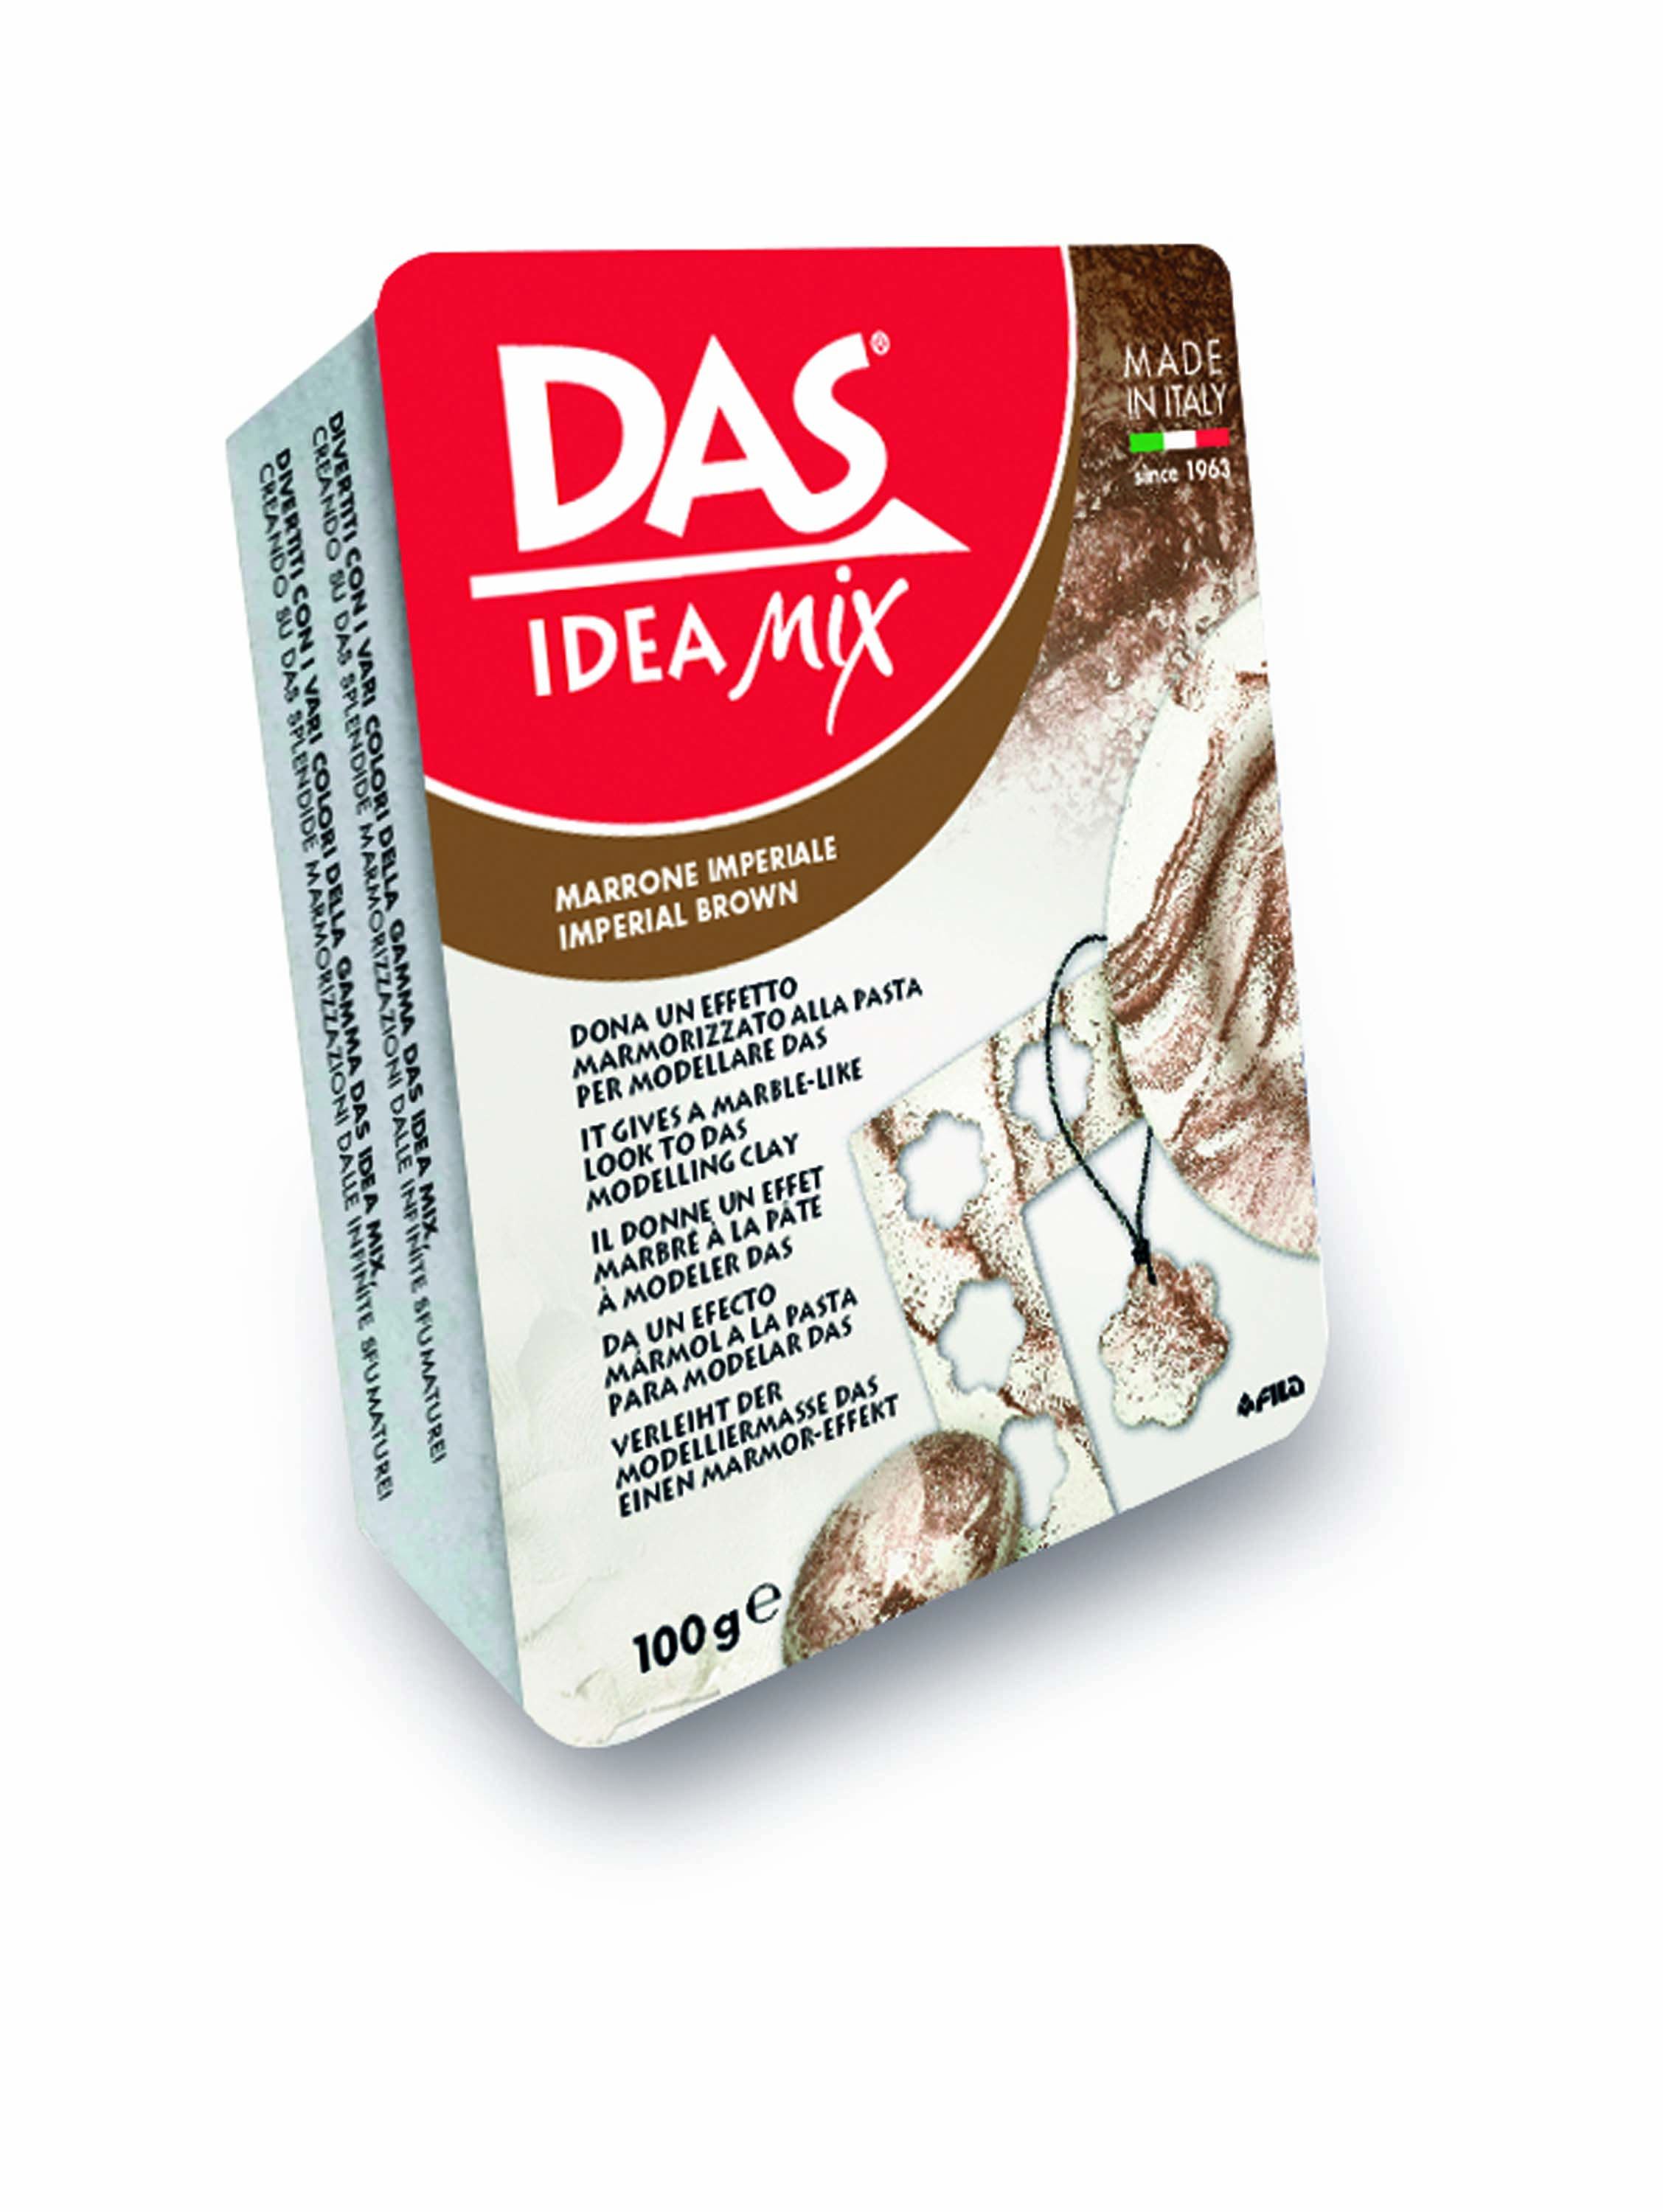 DAS Idea Mix (100g) Imperial Brown